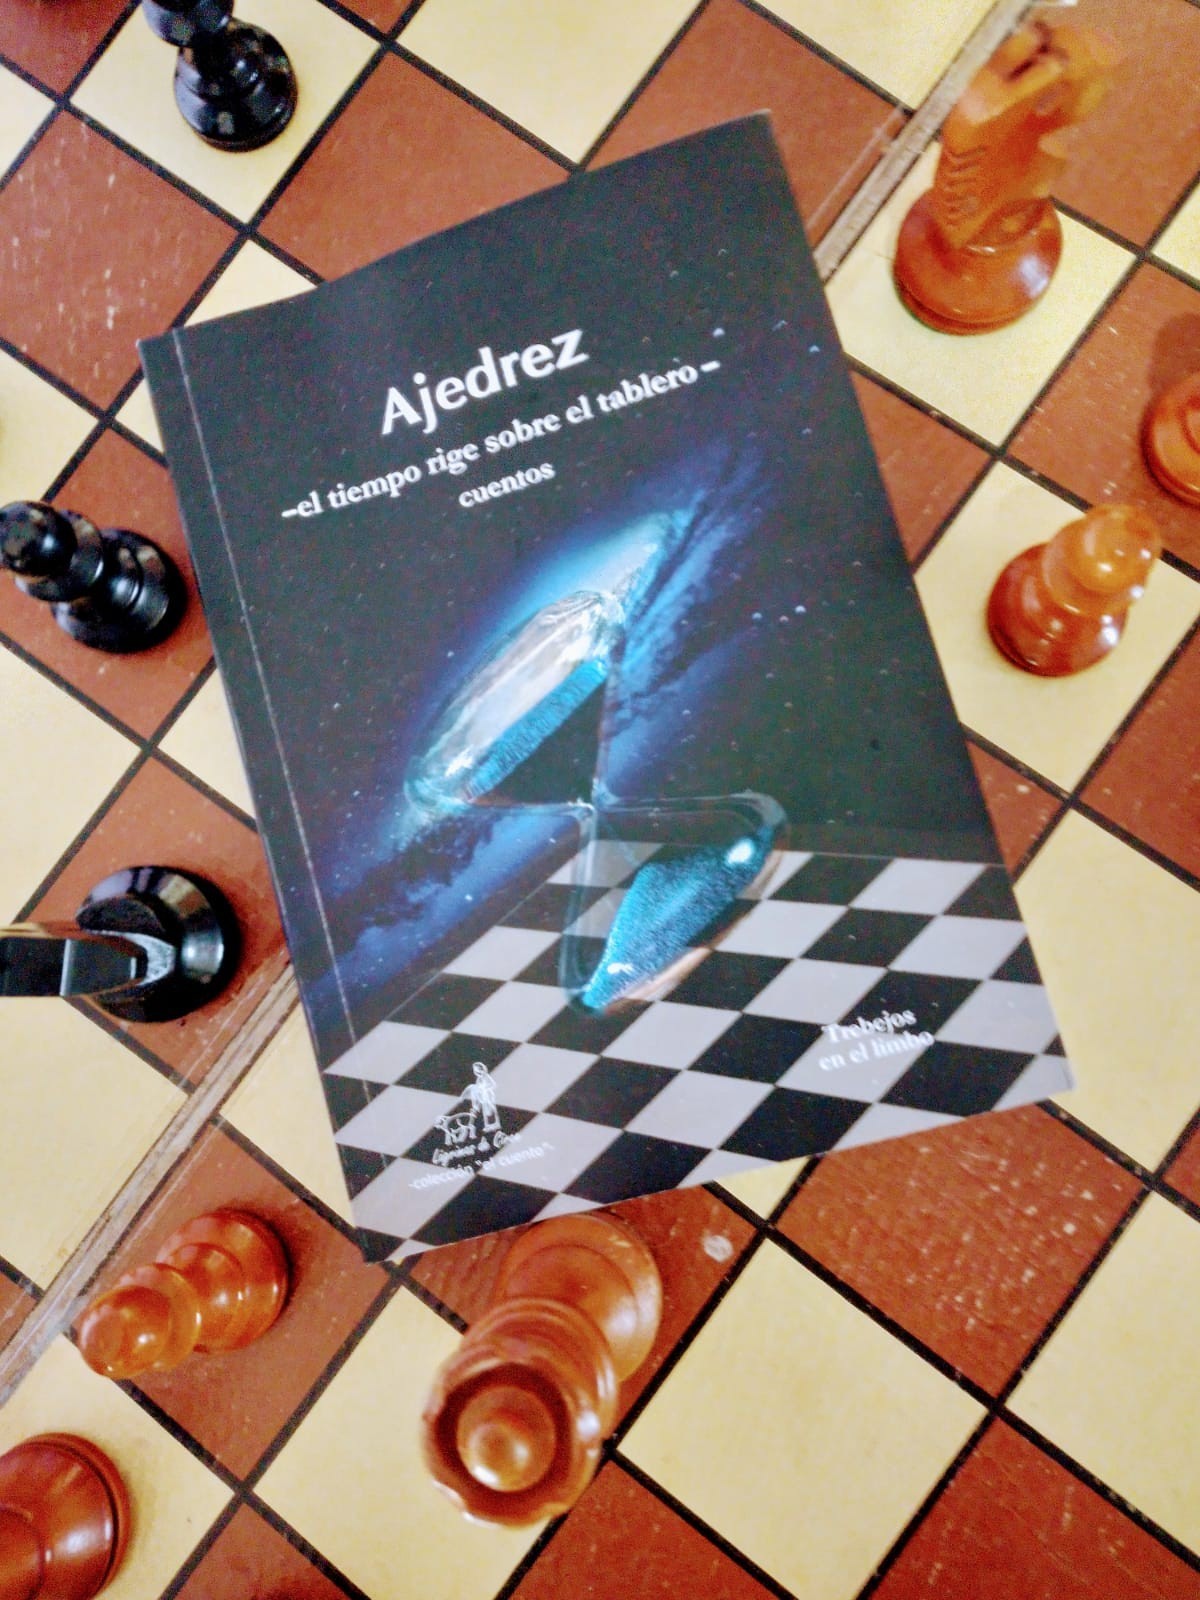 El primer libro del ajedrez moderno. – El Mercurio salmantino